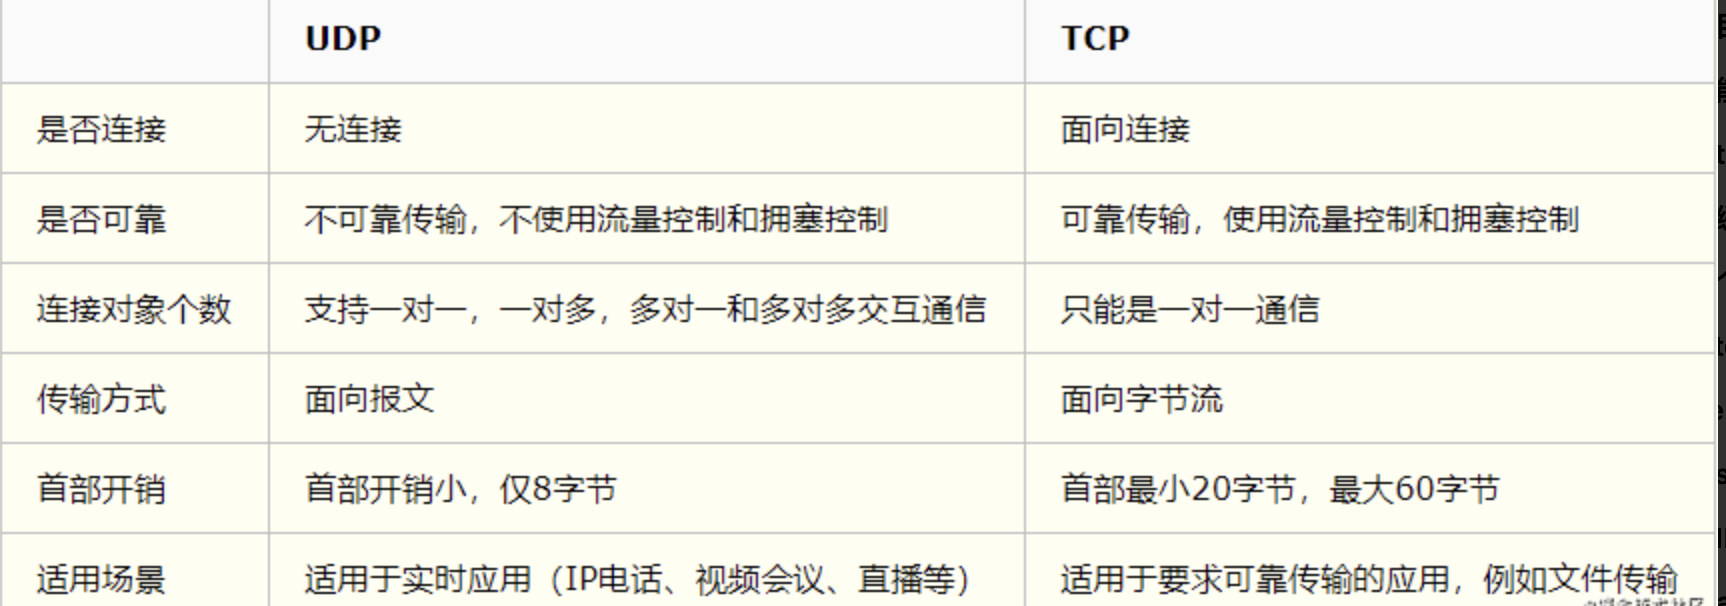 TCP&UDP\u533A\u522B